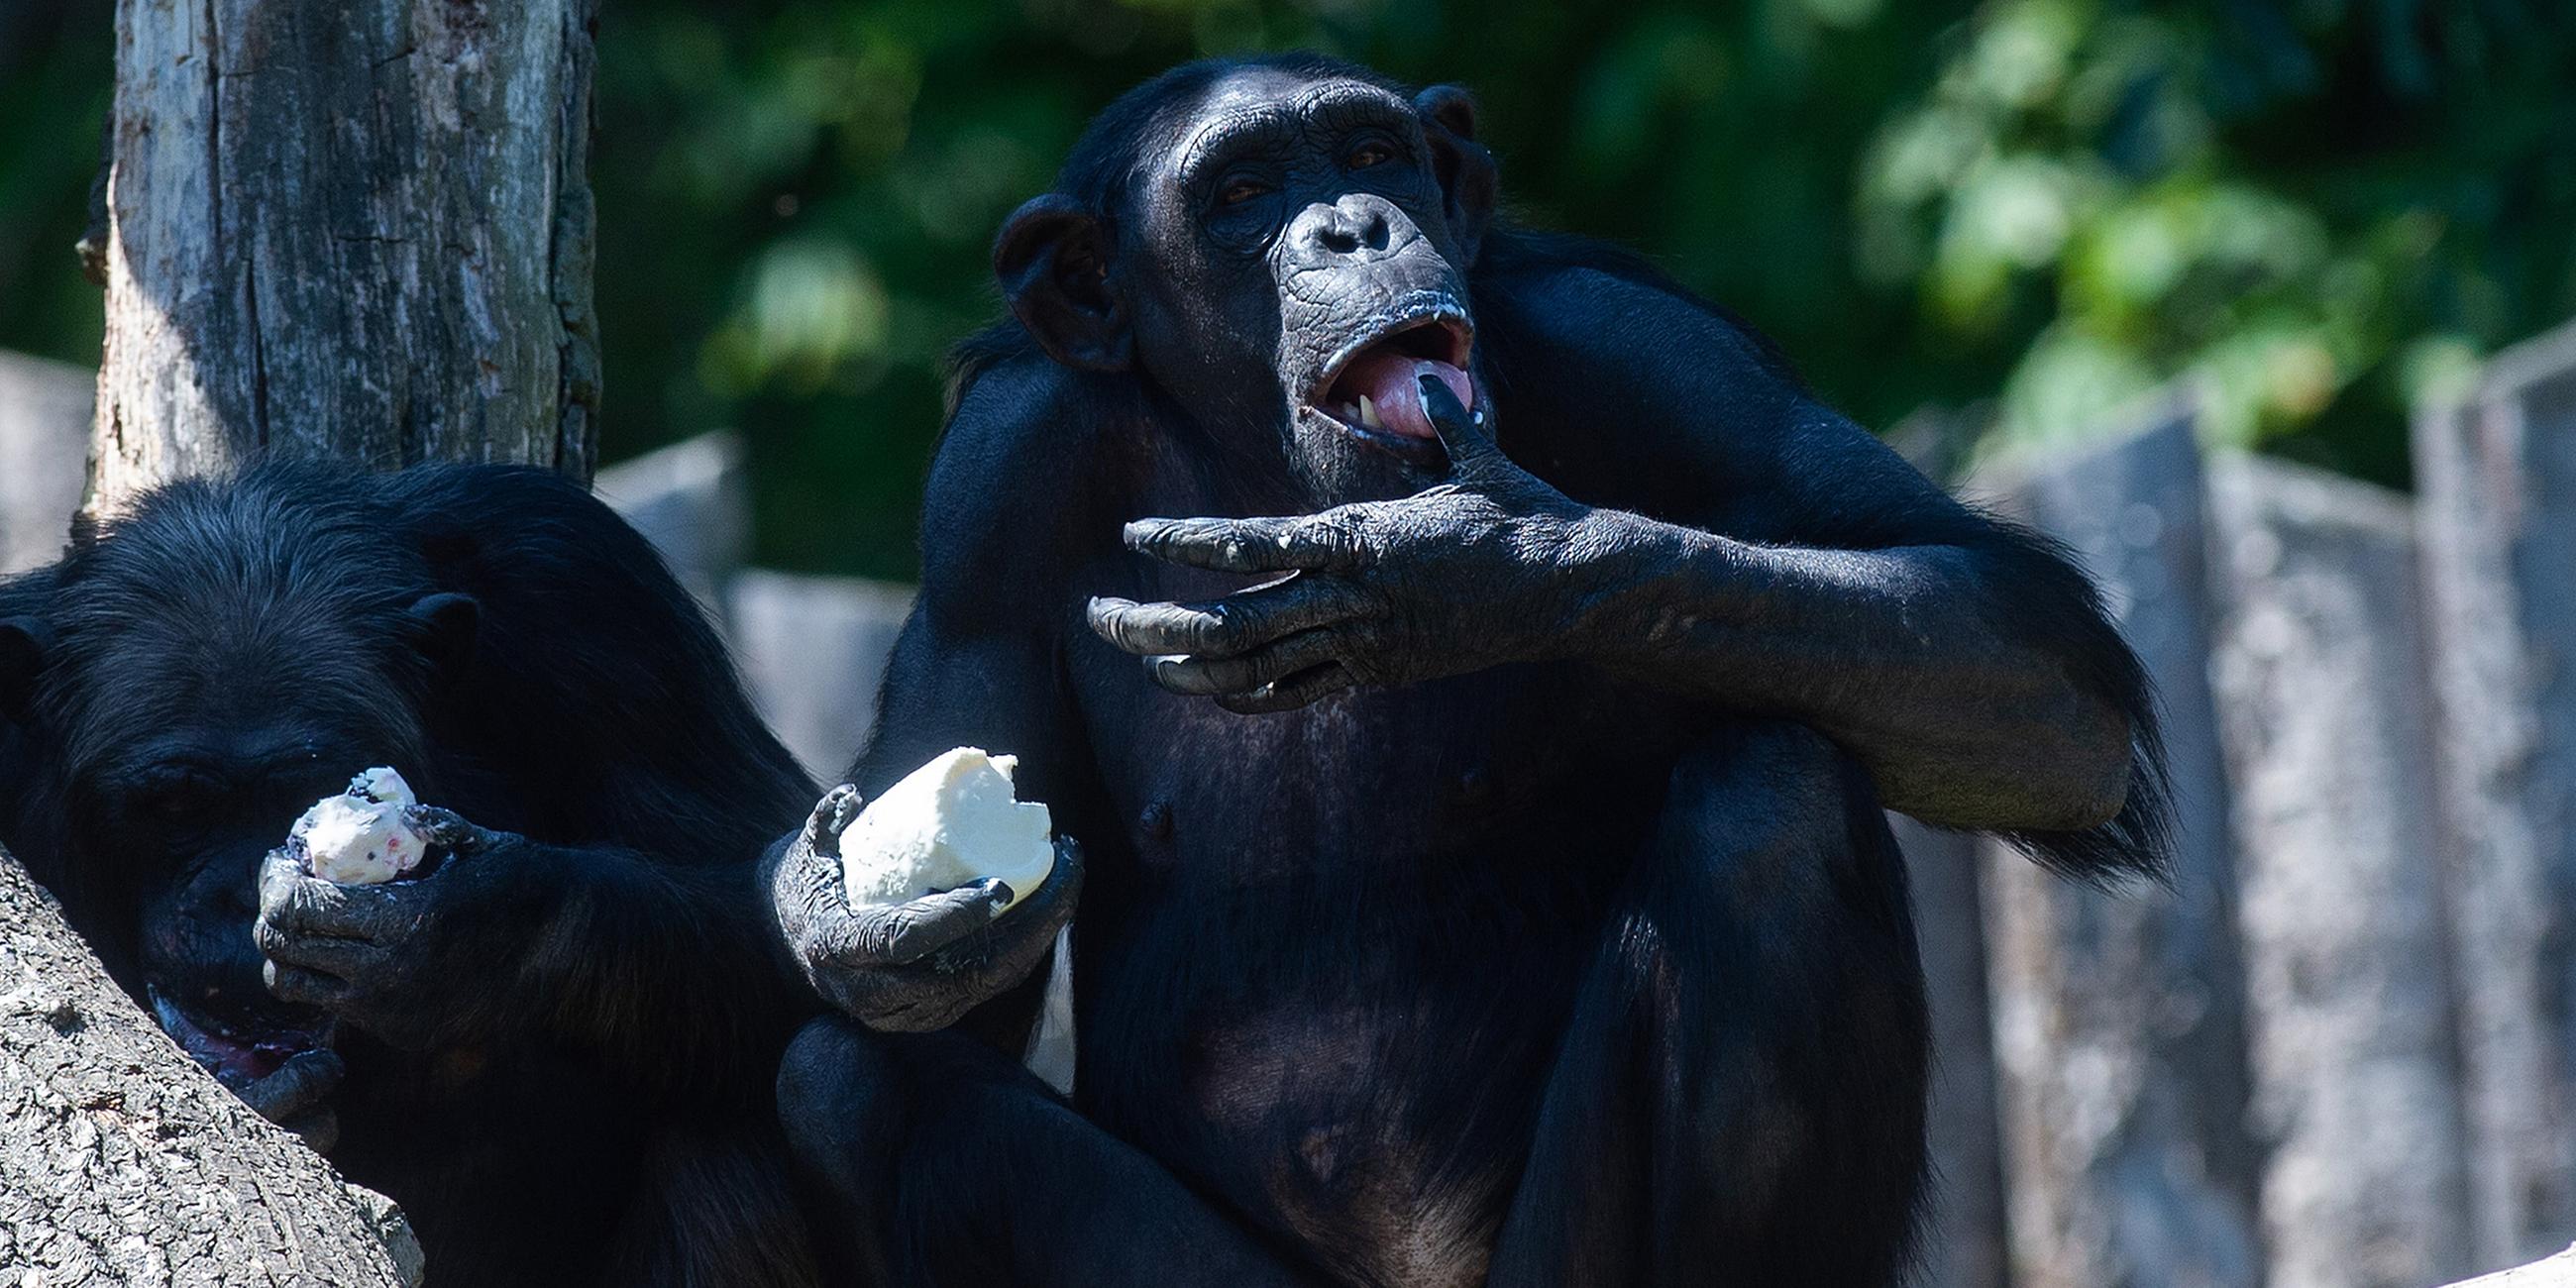 Schimpansen sitzen in ihrem Freigehege und geniessen ein Eis, am 24.07.2019 in Magdeburg.